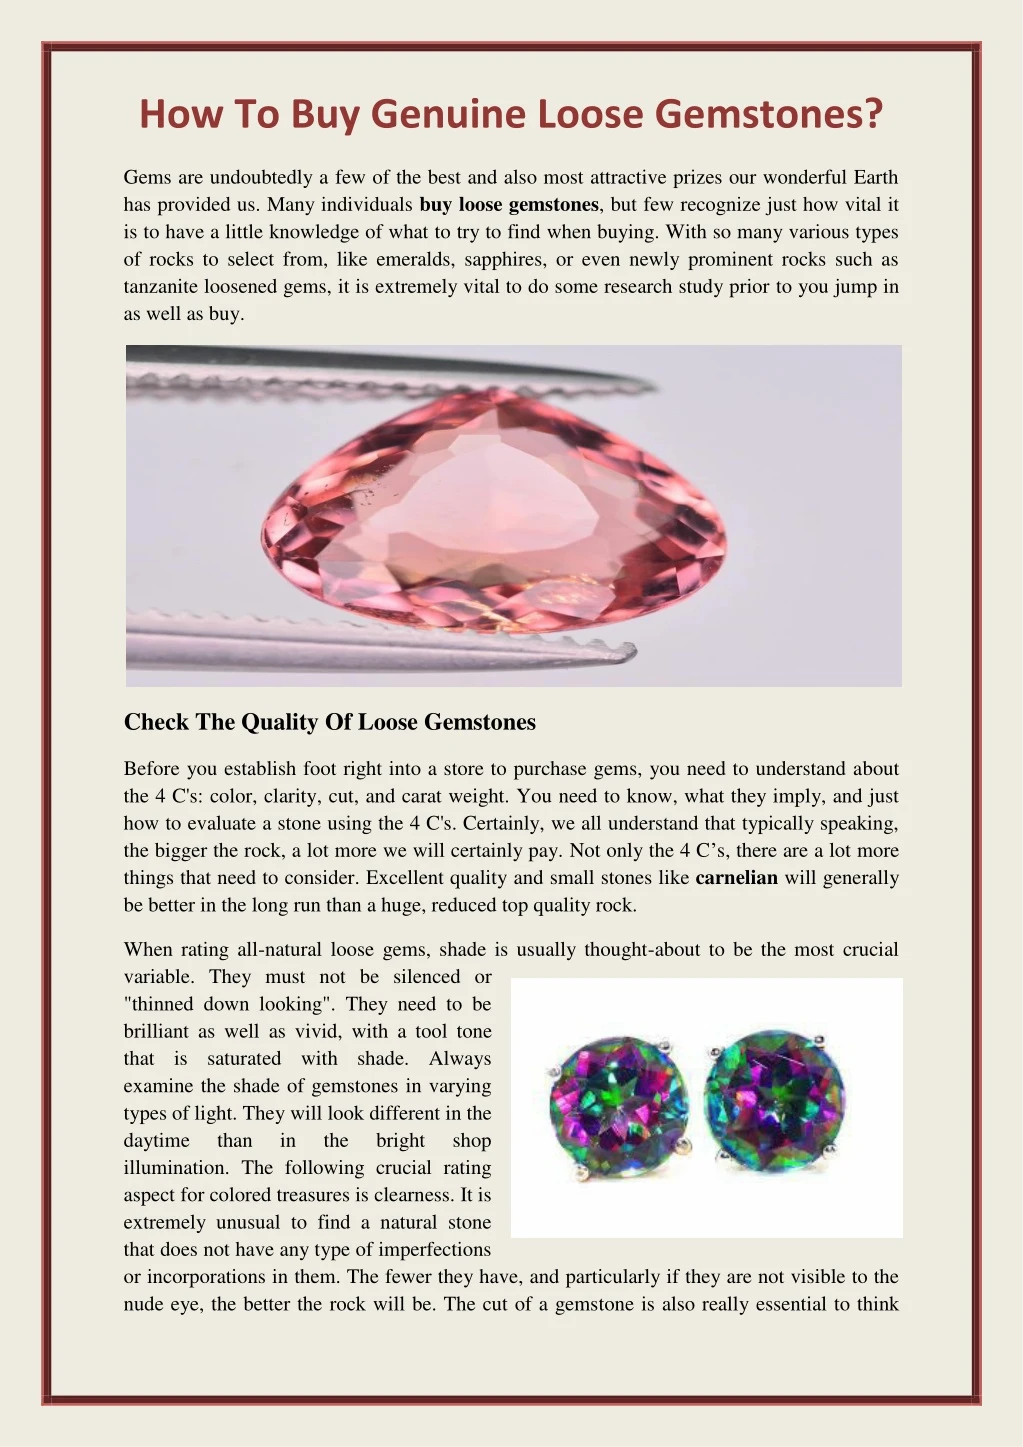 how to buy genuine loose gemstones